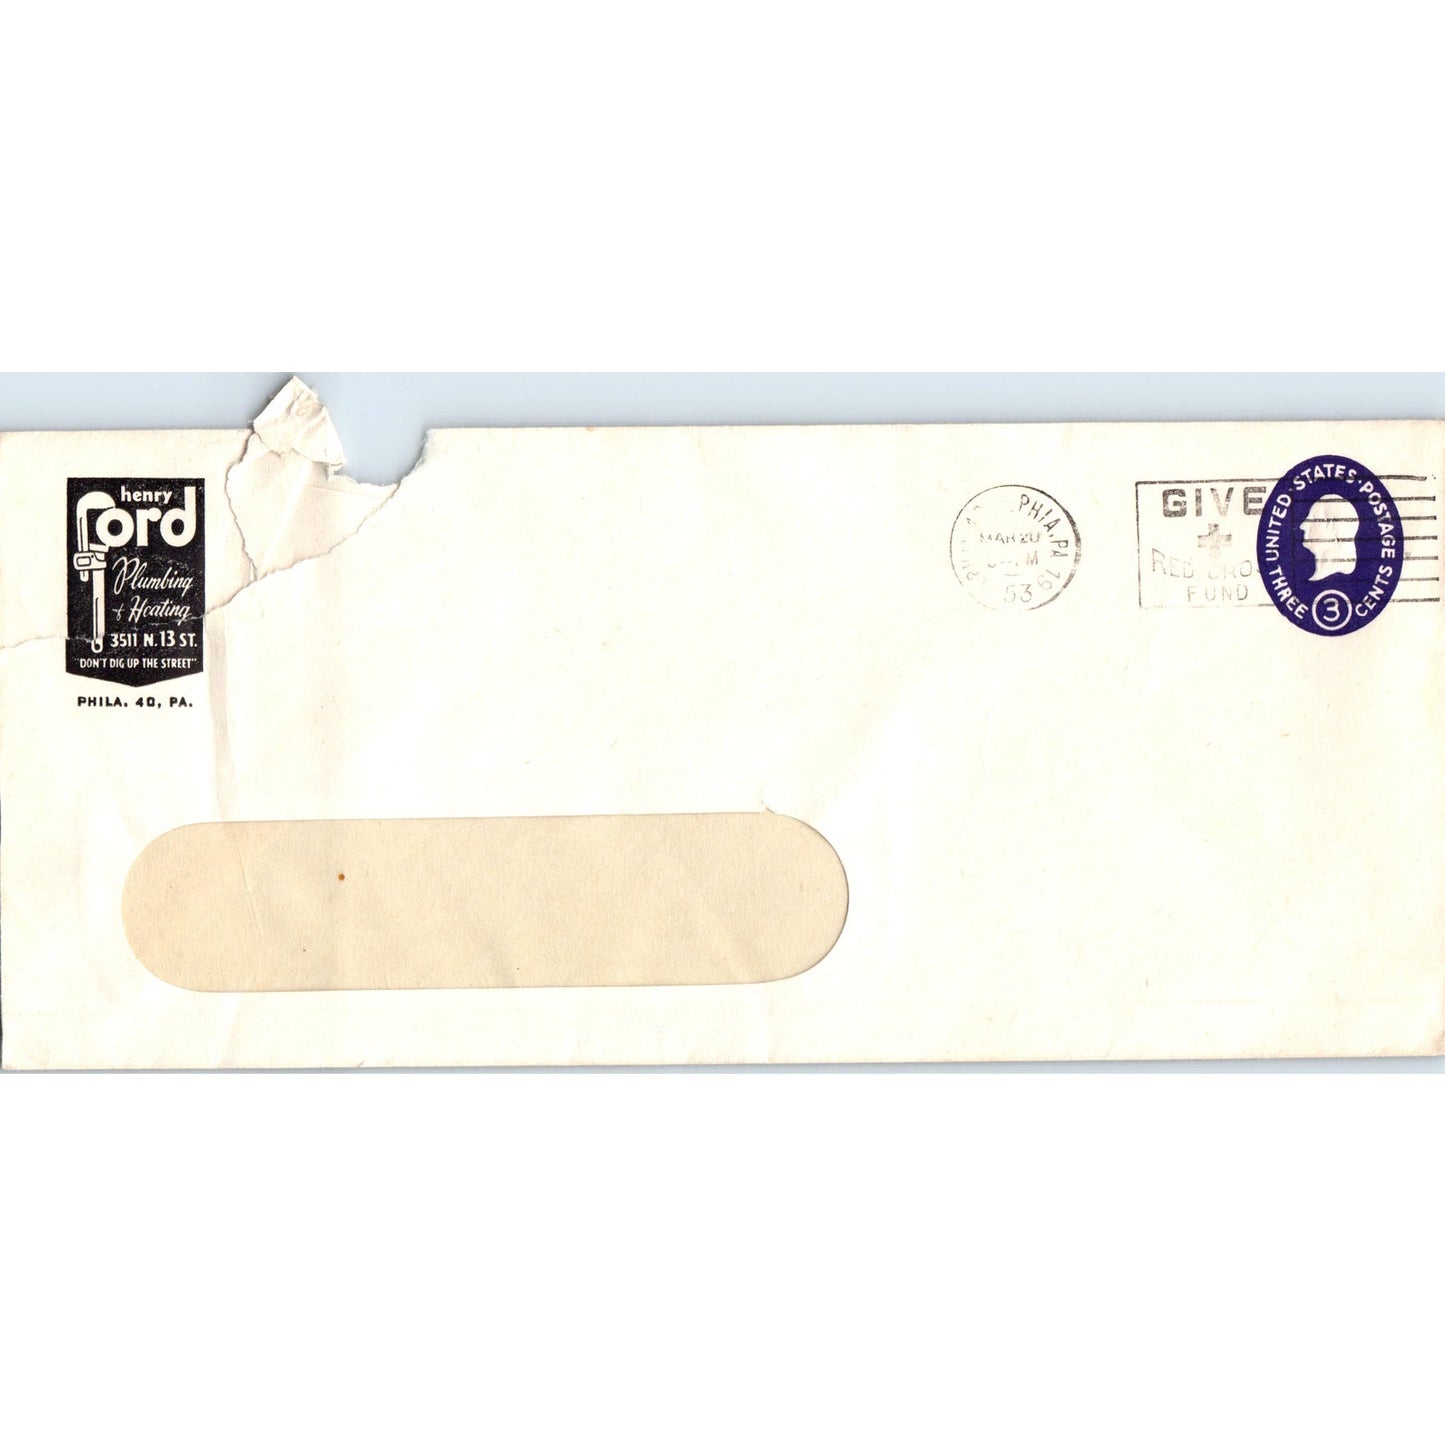 1953 Henry Ford Plumbing & Heating Philadelphia Postal Cover Envelope TH9-L2